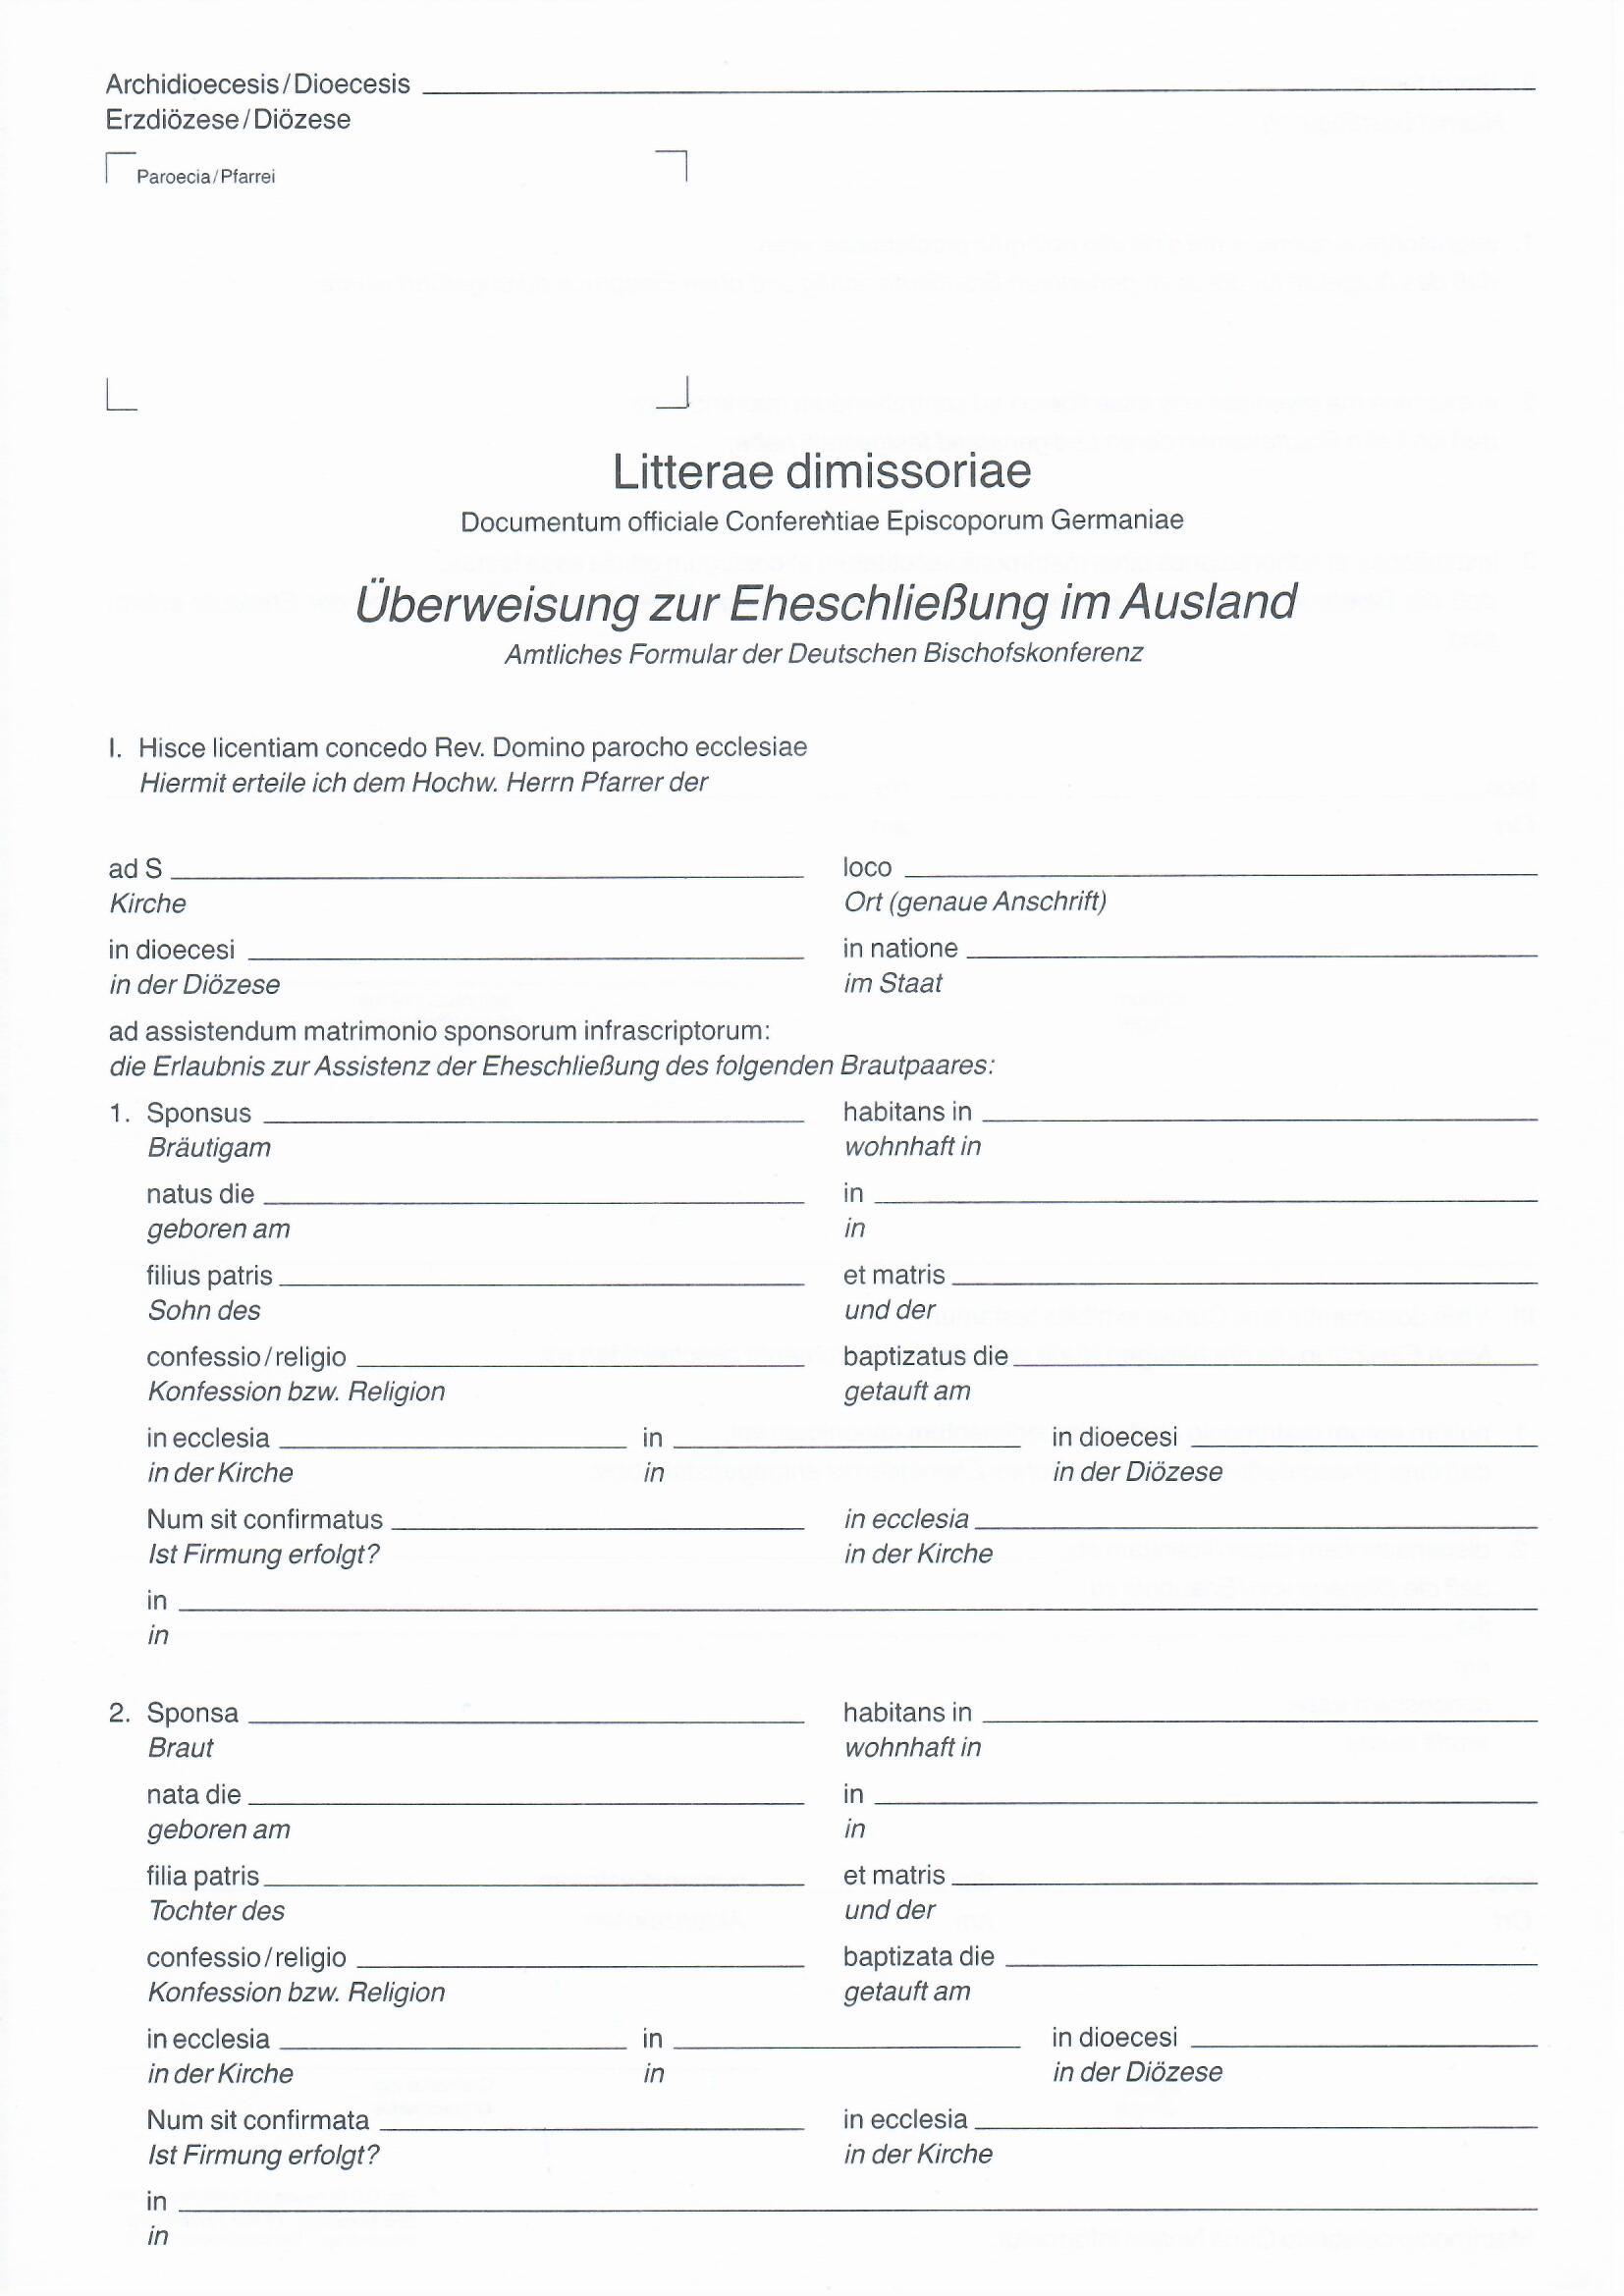 13.15 Litterae dimissoriae - Überweisung zur Eheschließung im Ausland